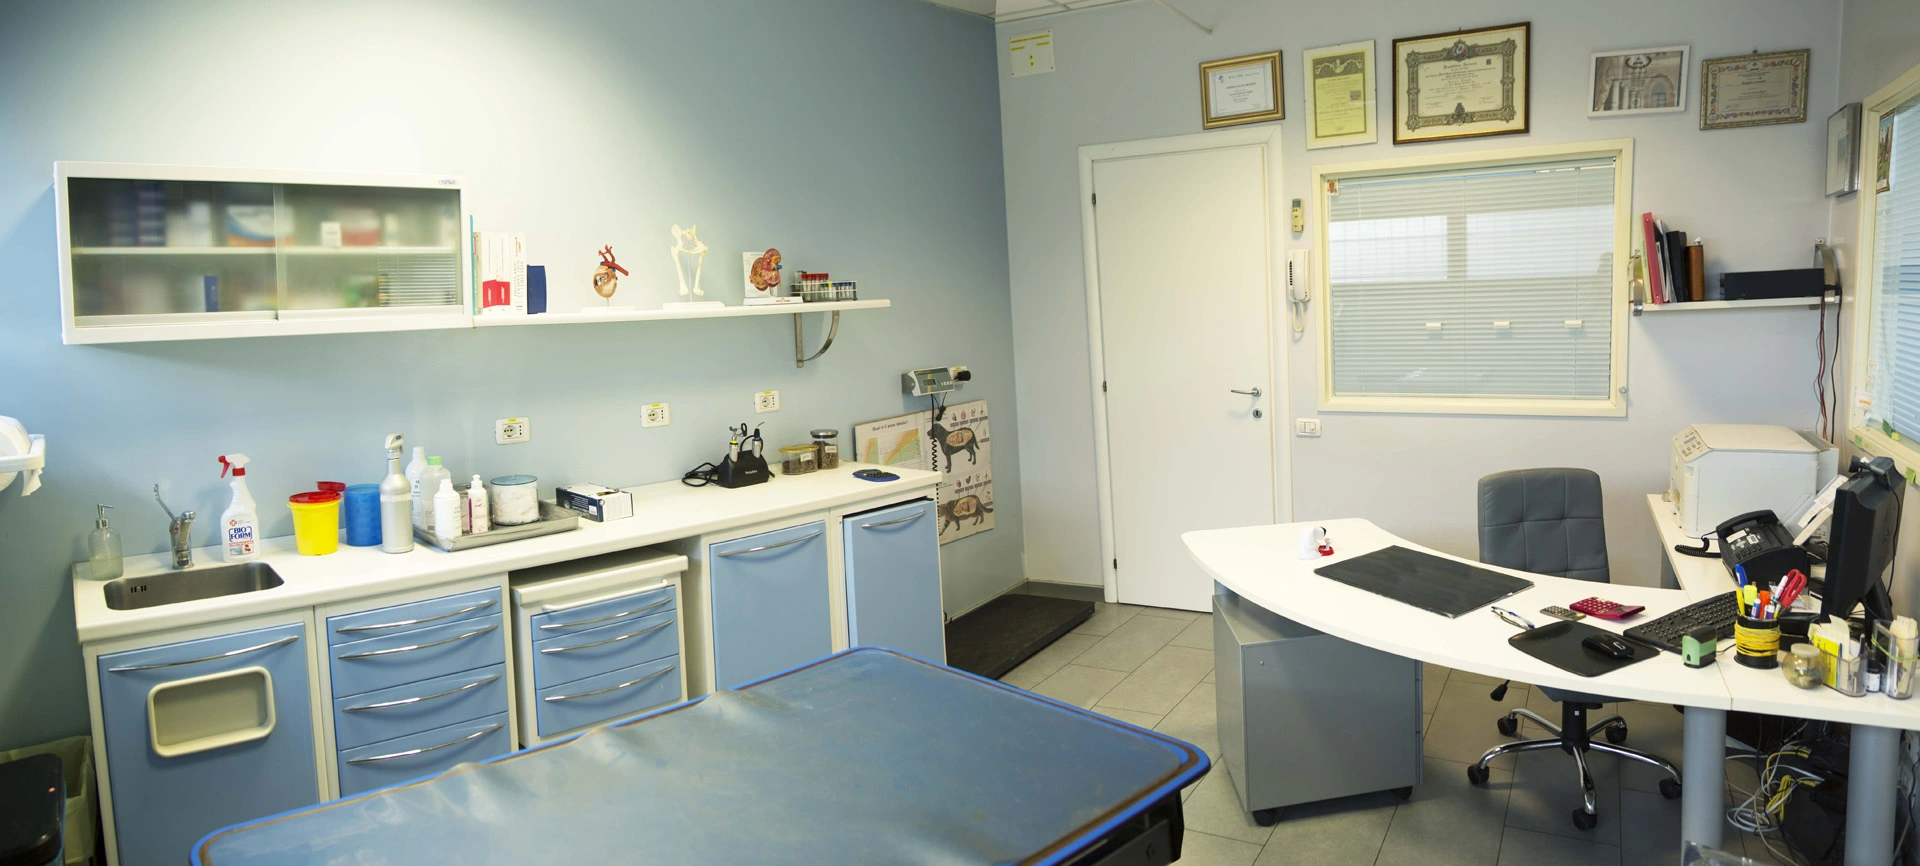 clinica Veterinaria Catania - Soccorsi - Intervento - Cure